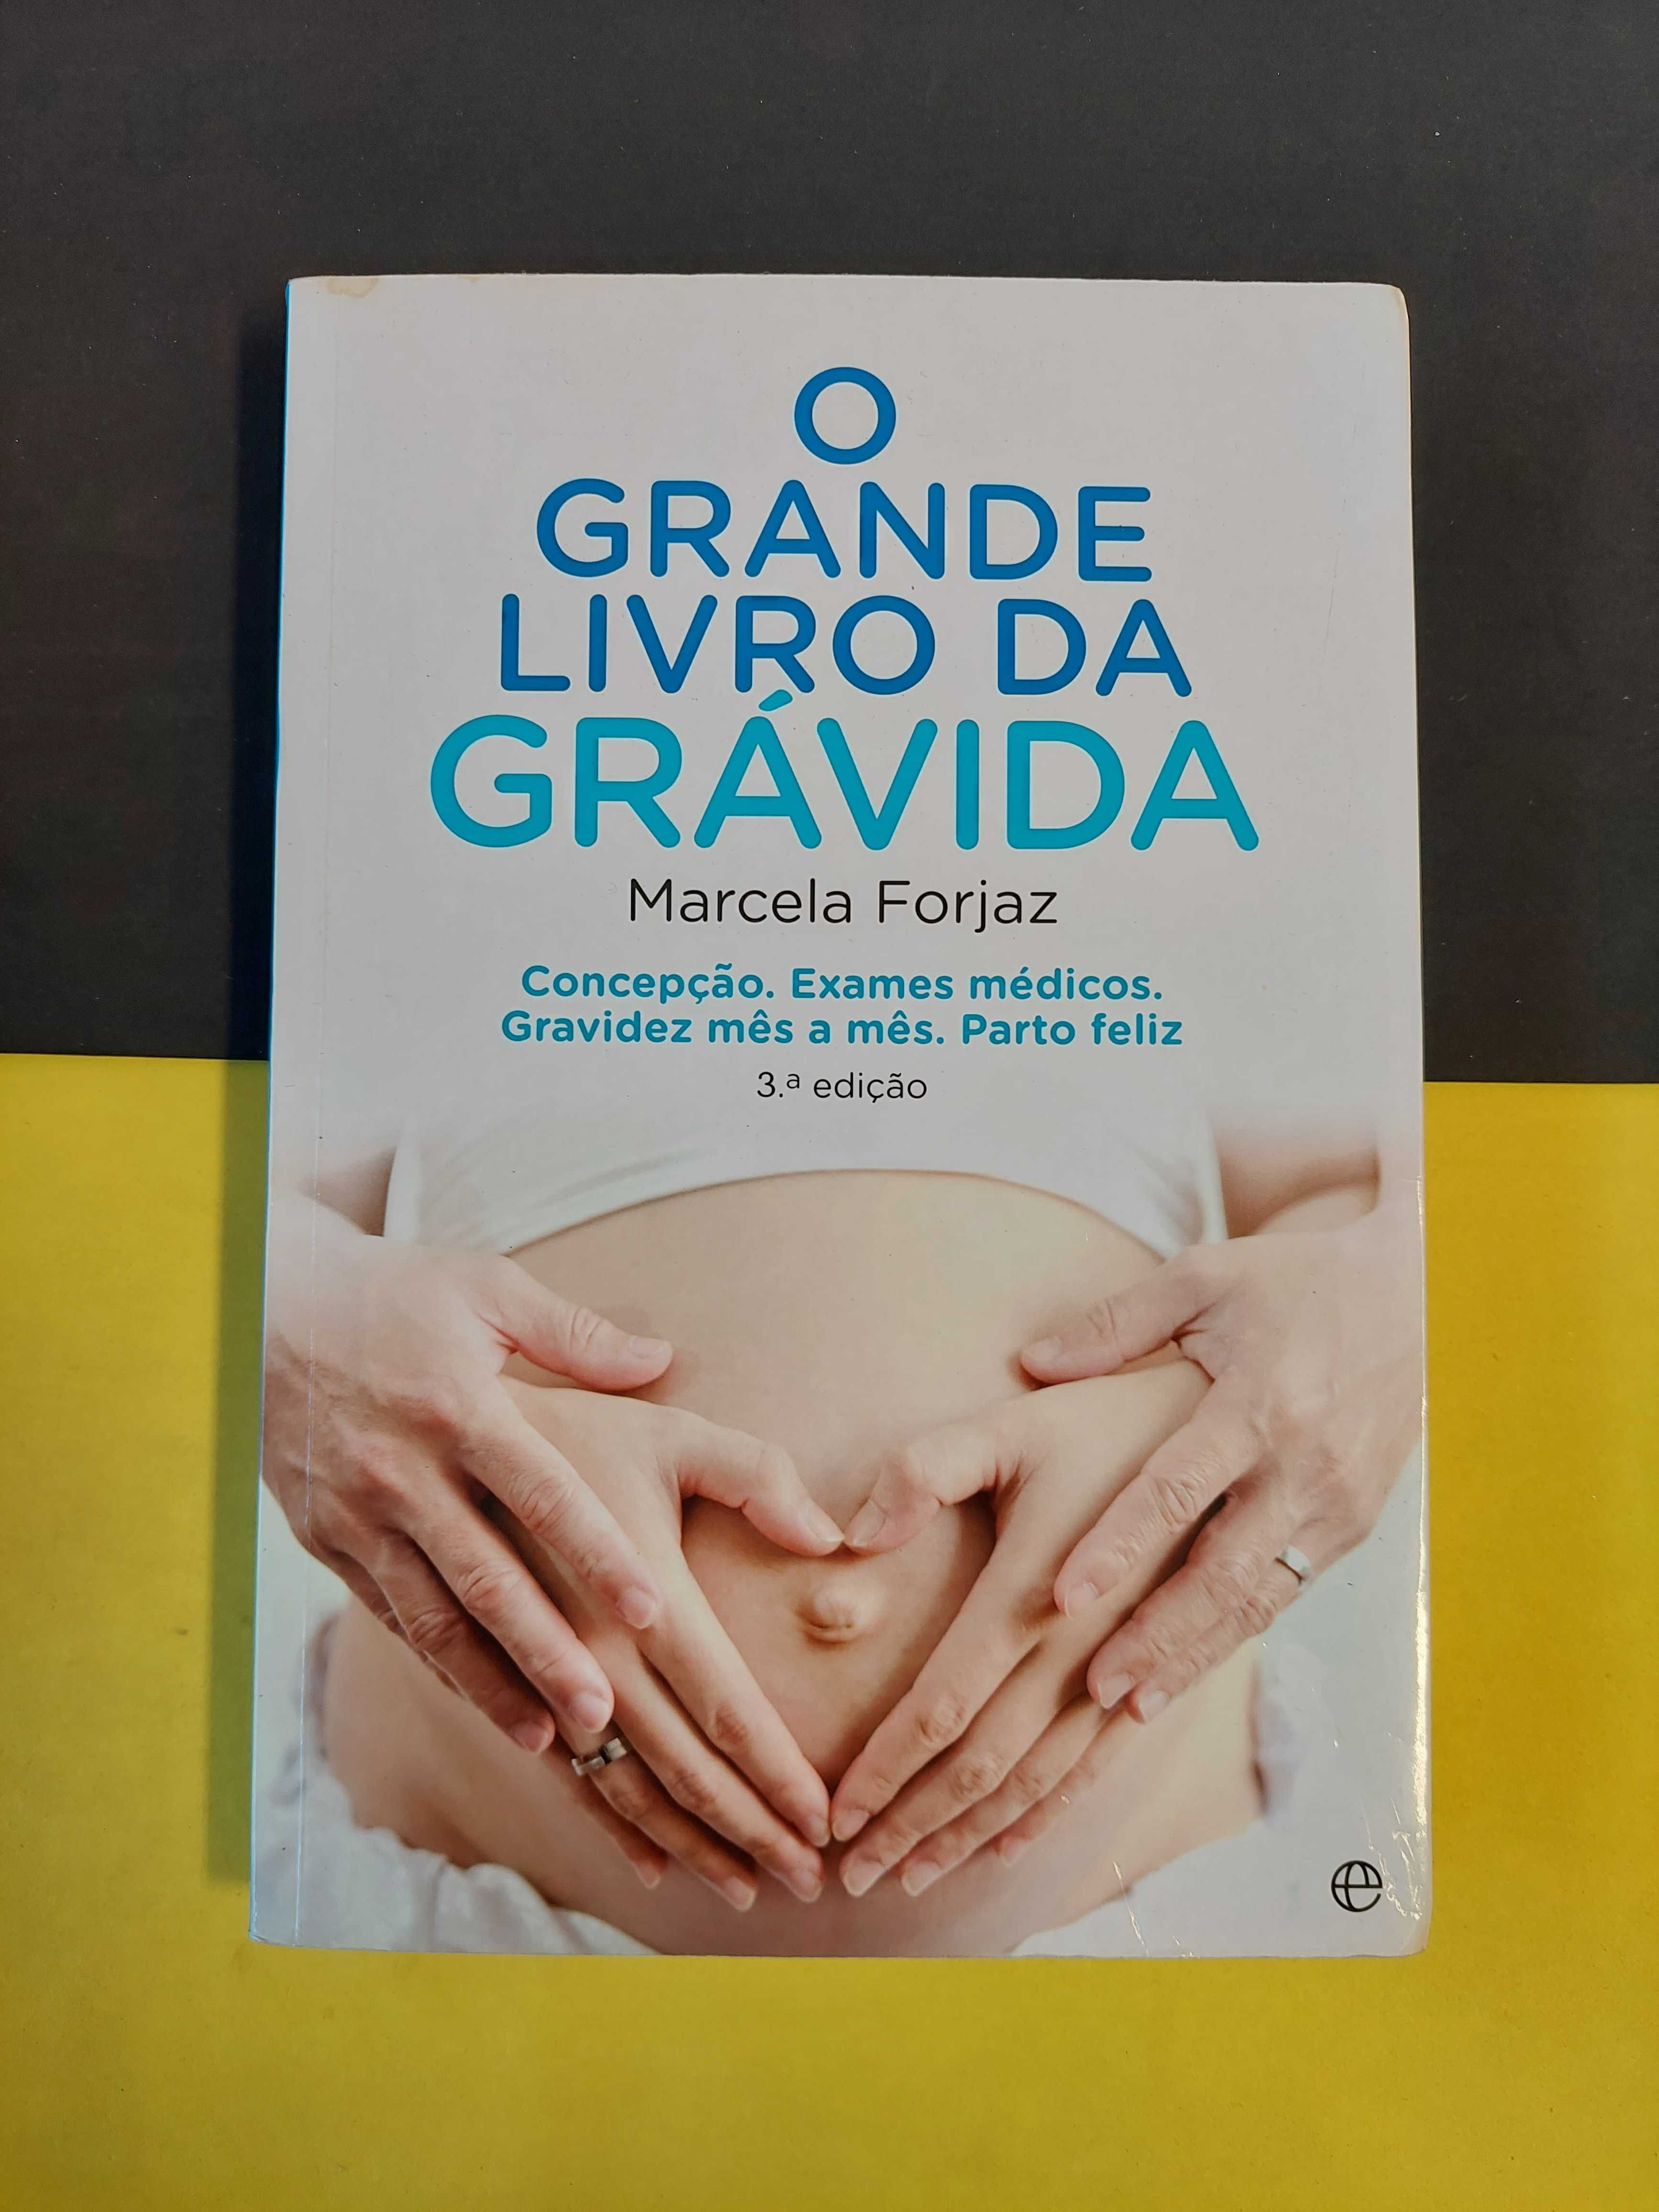 Marcela Forjaz - O grande livro da grávida